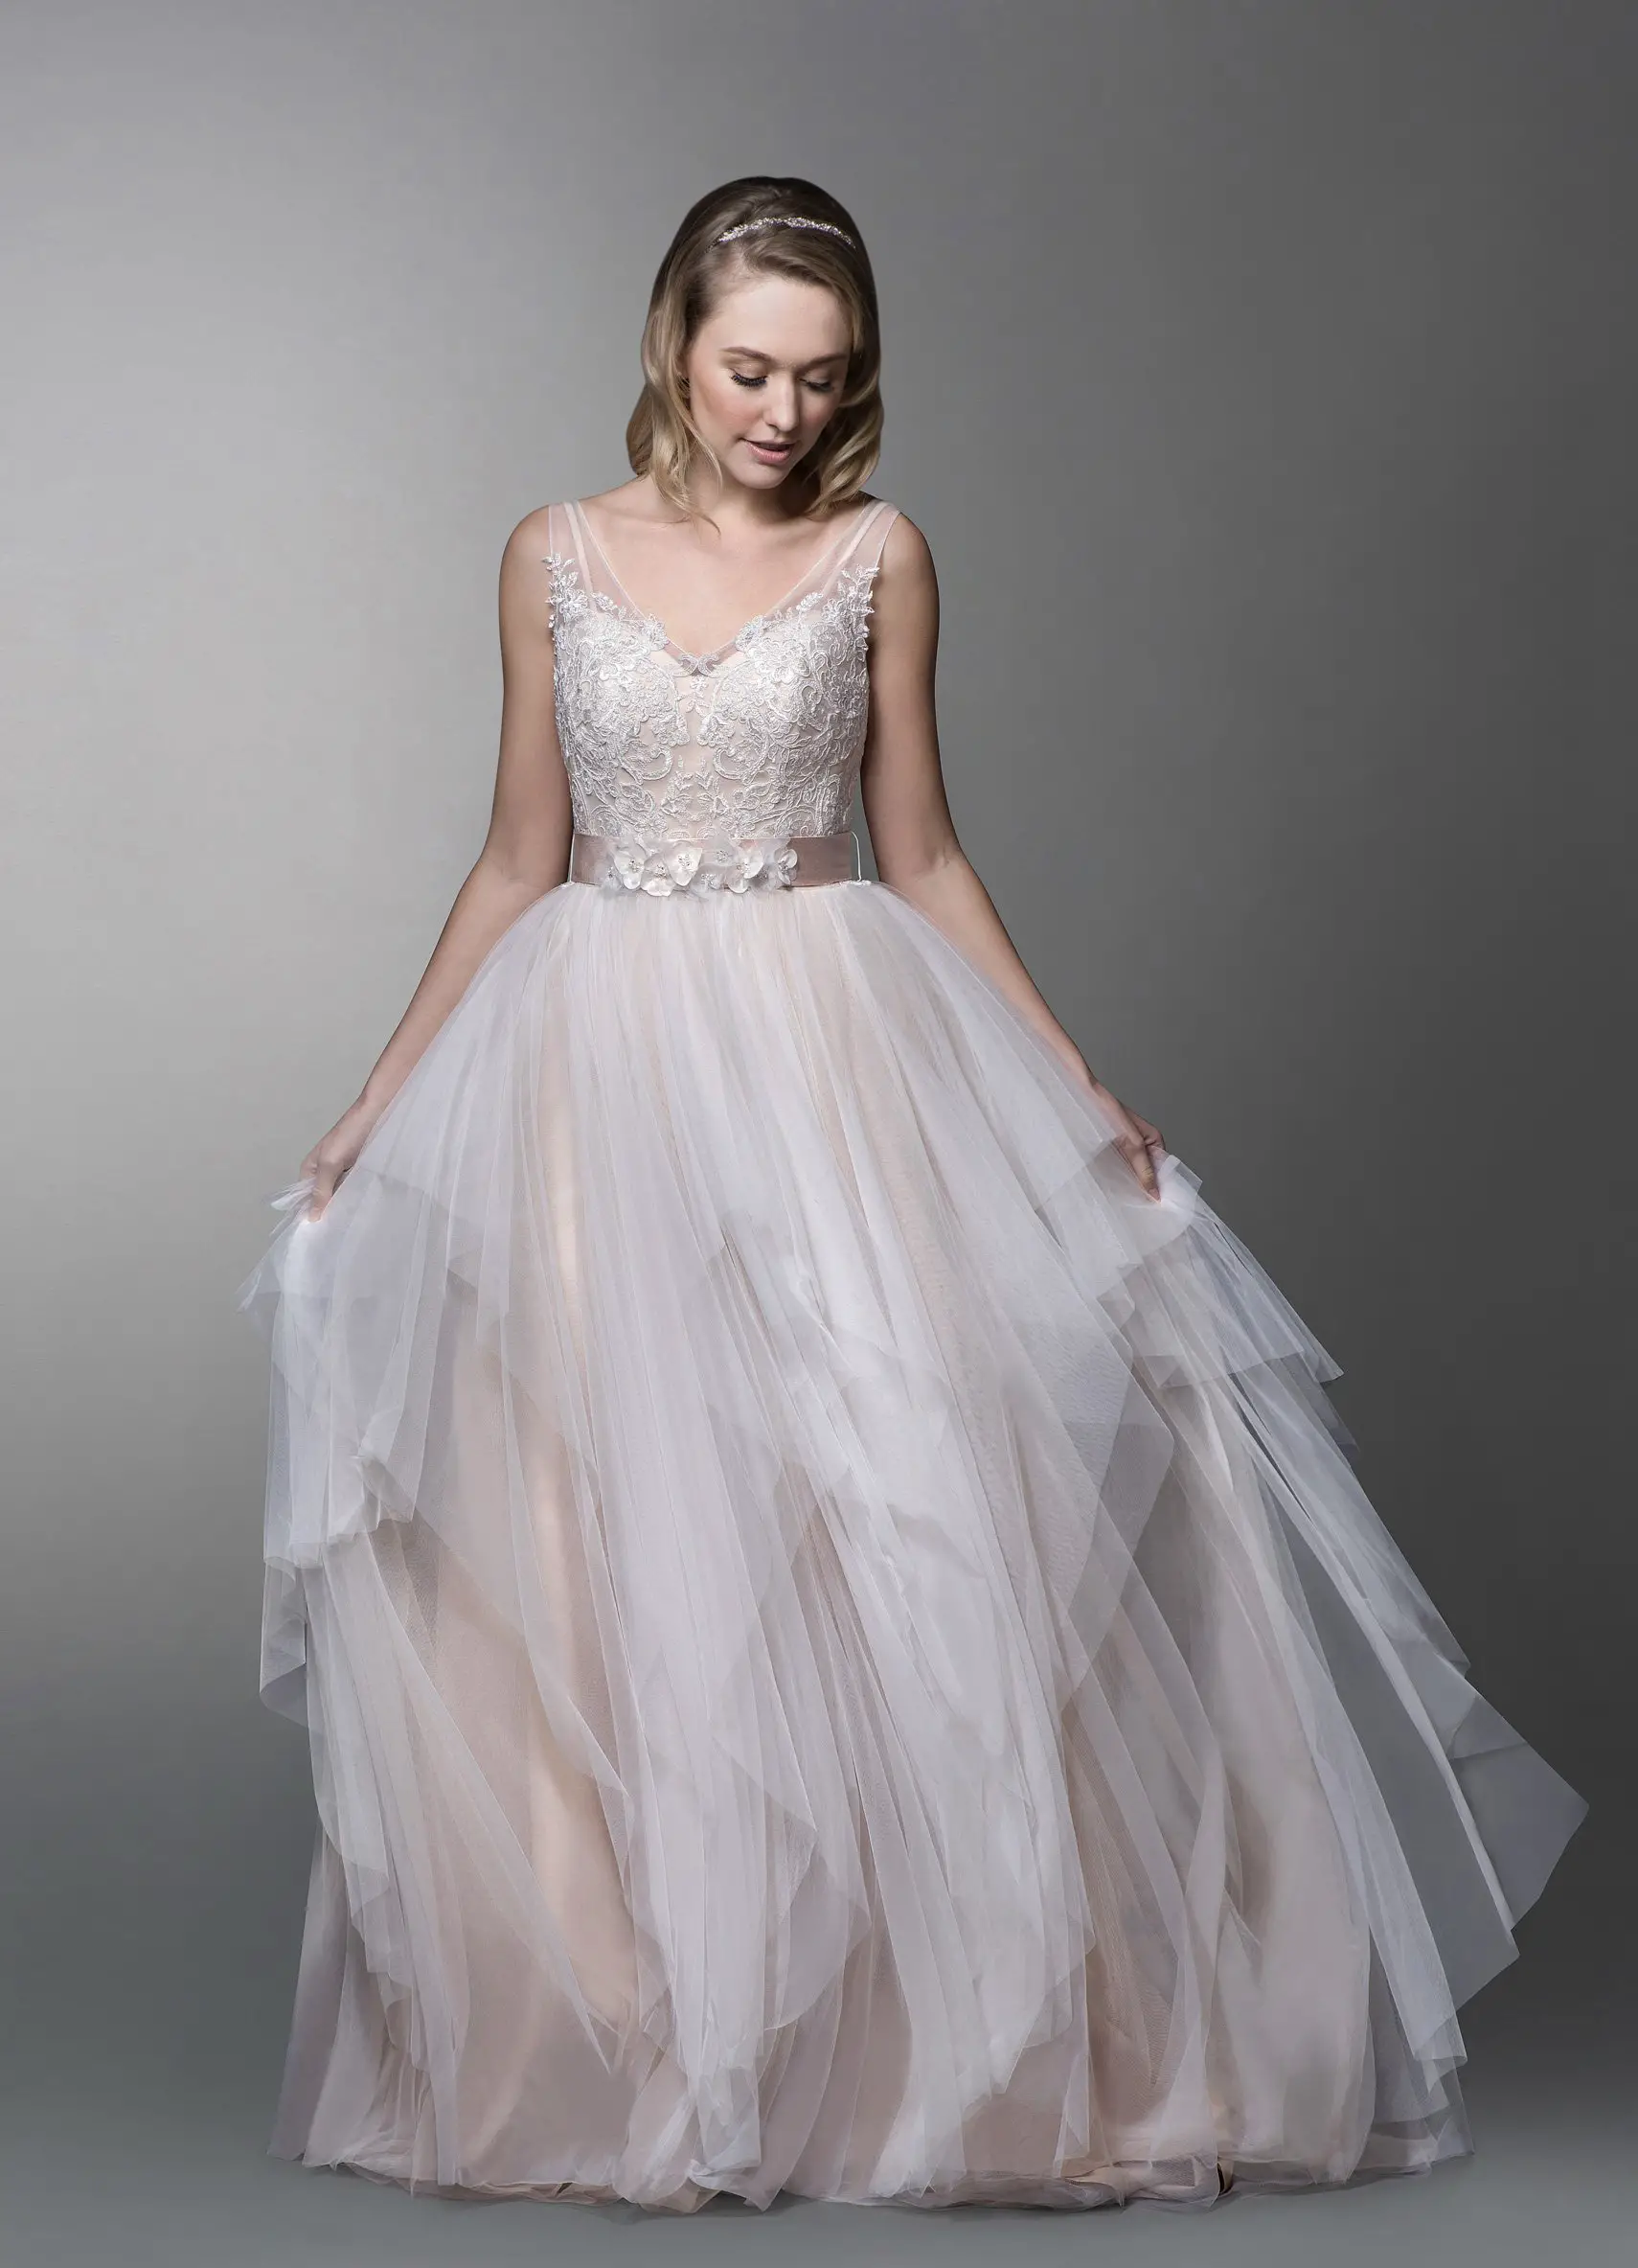 2020 Wedding Dress Trends From an Expert Bridal Designer